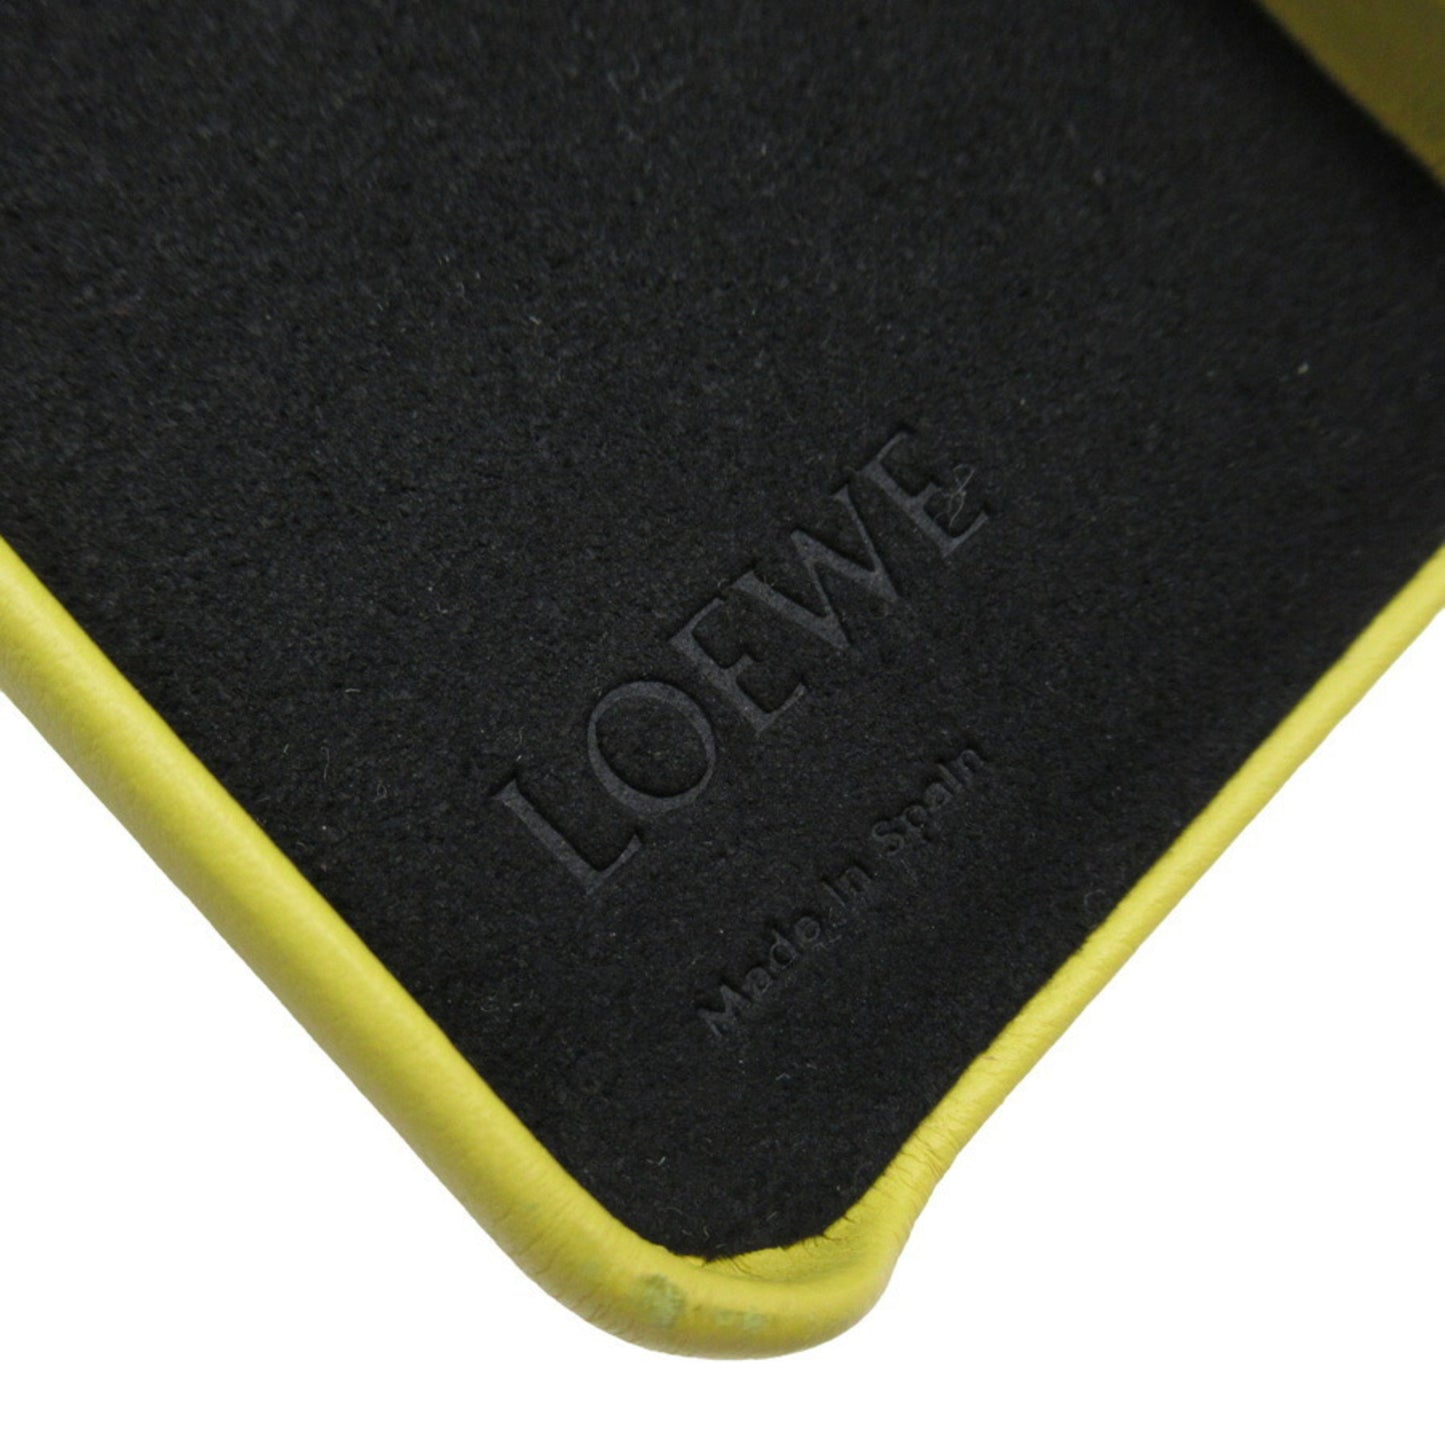 Loewe Women's Loewe Leather Elephant Handbag in Yellow